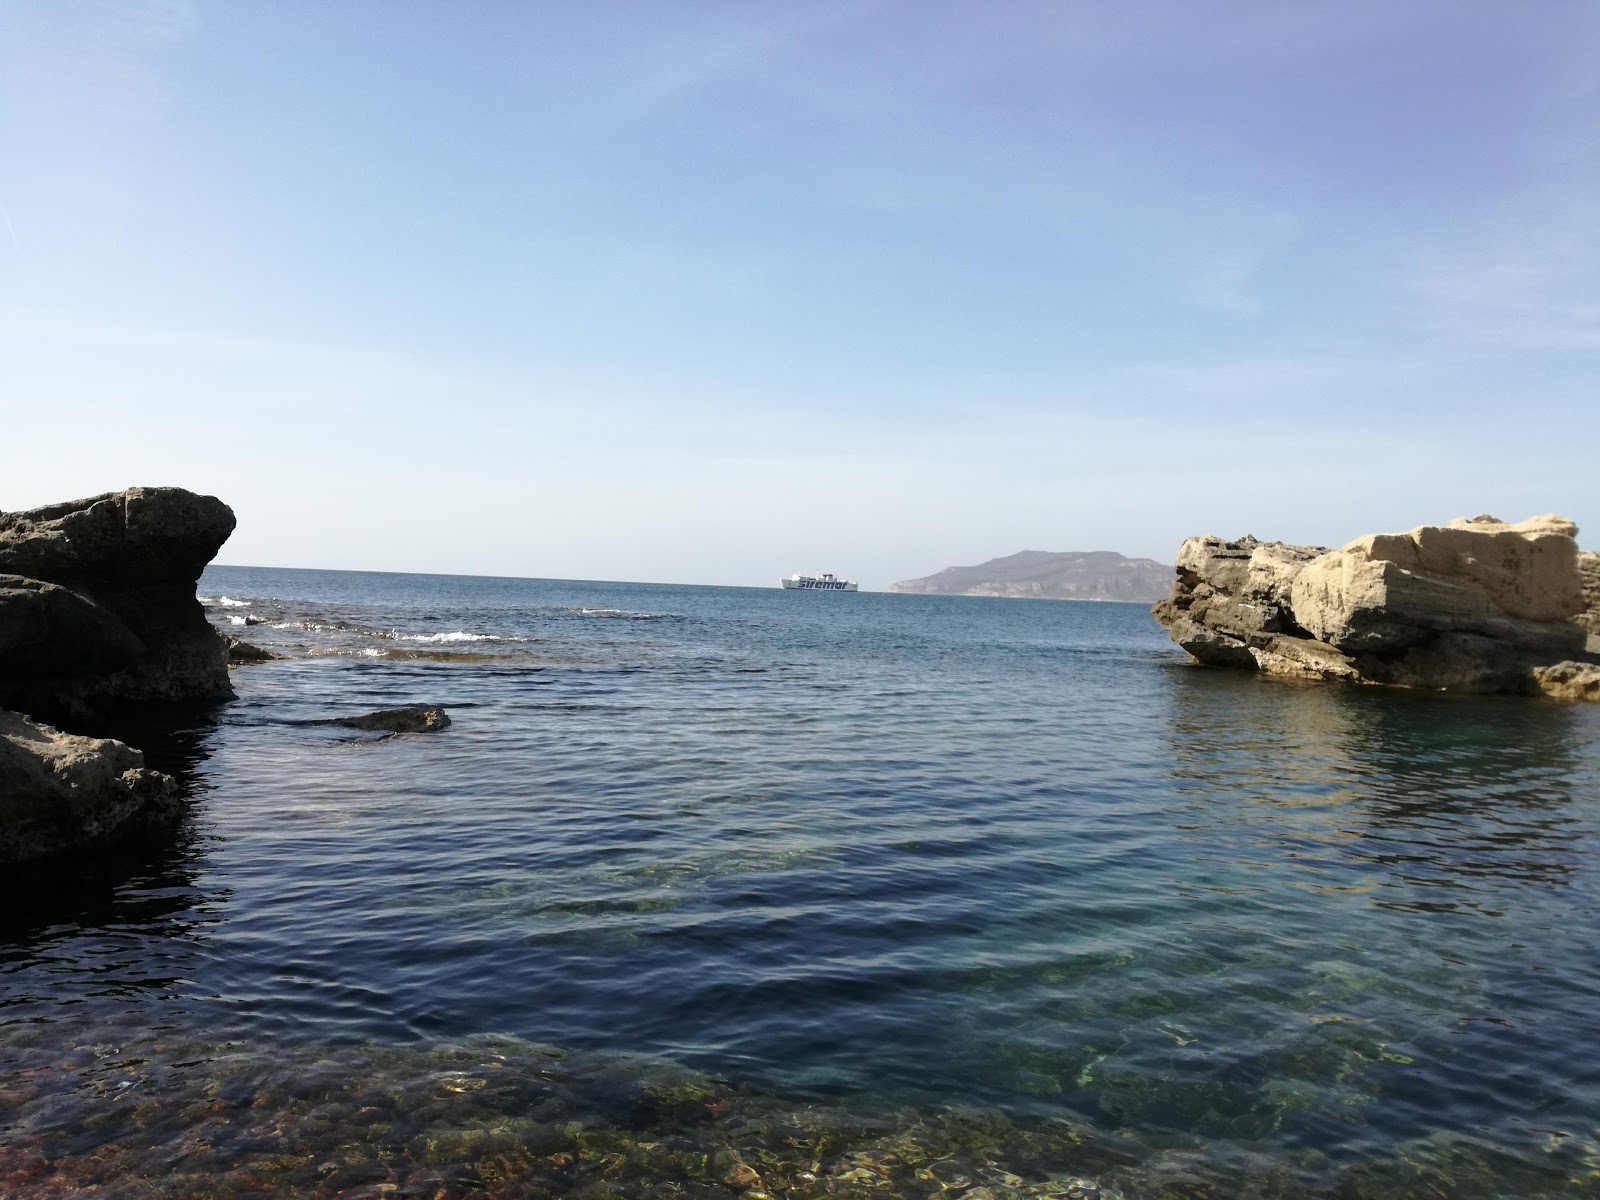 Cala Graziosa beach II'in fotoğrafı doğrudan plaj ile birlikte